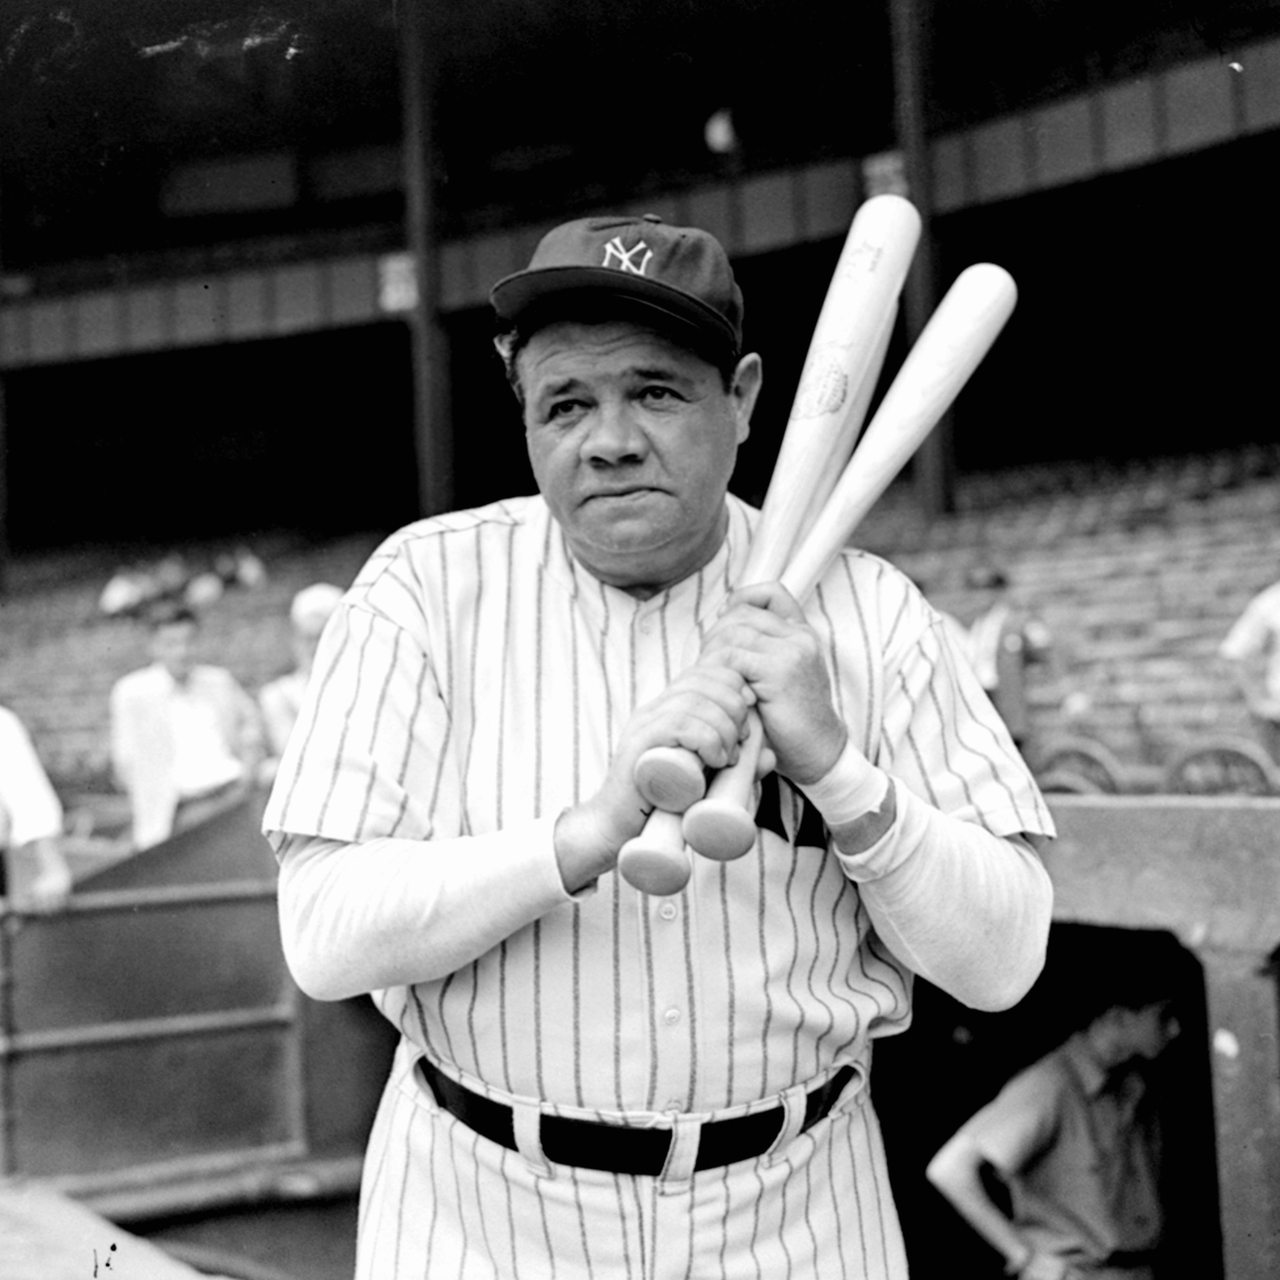 Der amerikanische Baseballspiele Babe Ruth beim Aufwärmen mit zwei Baseballschlägern